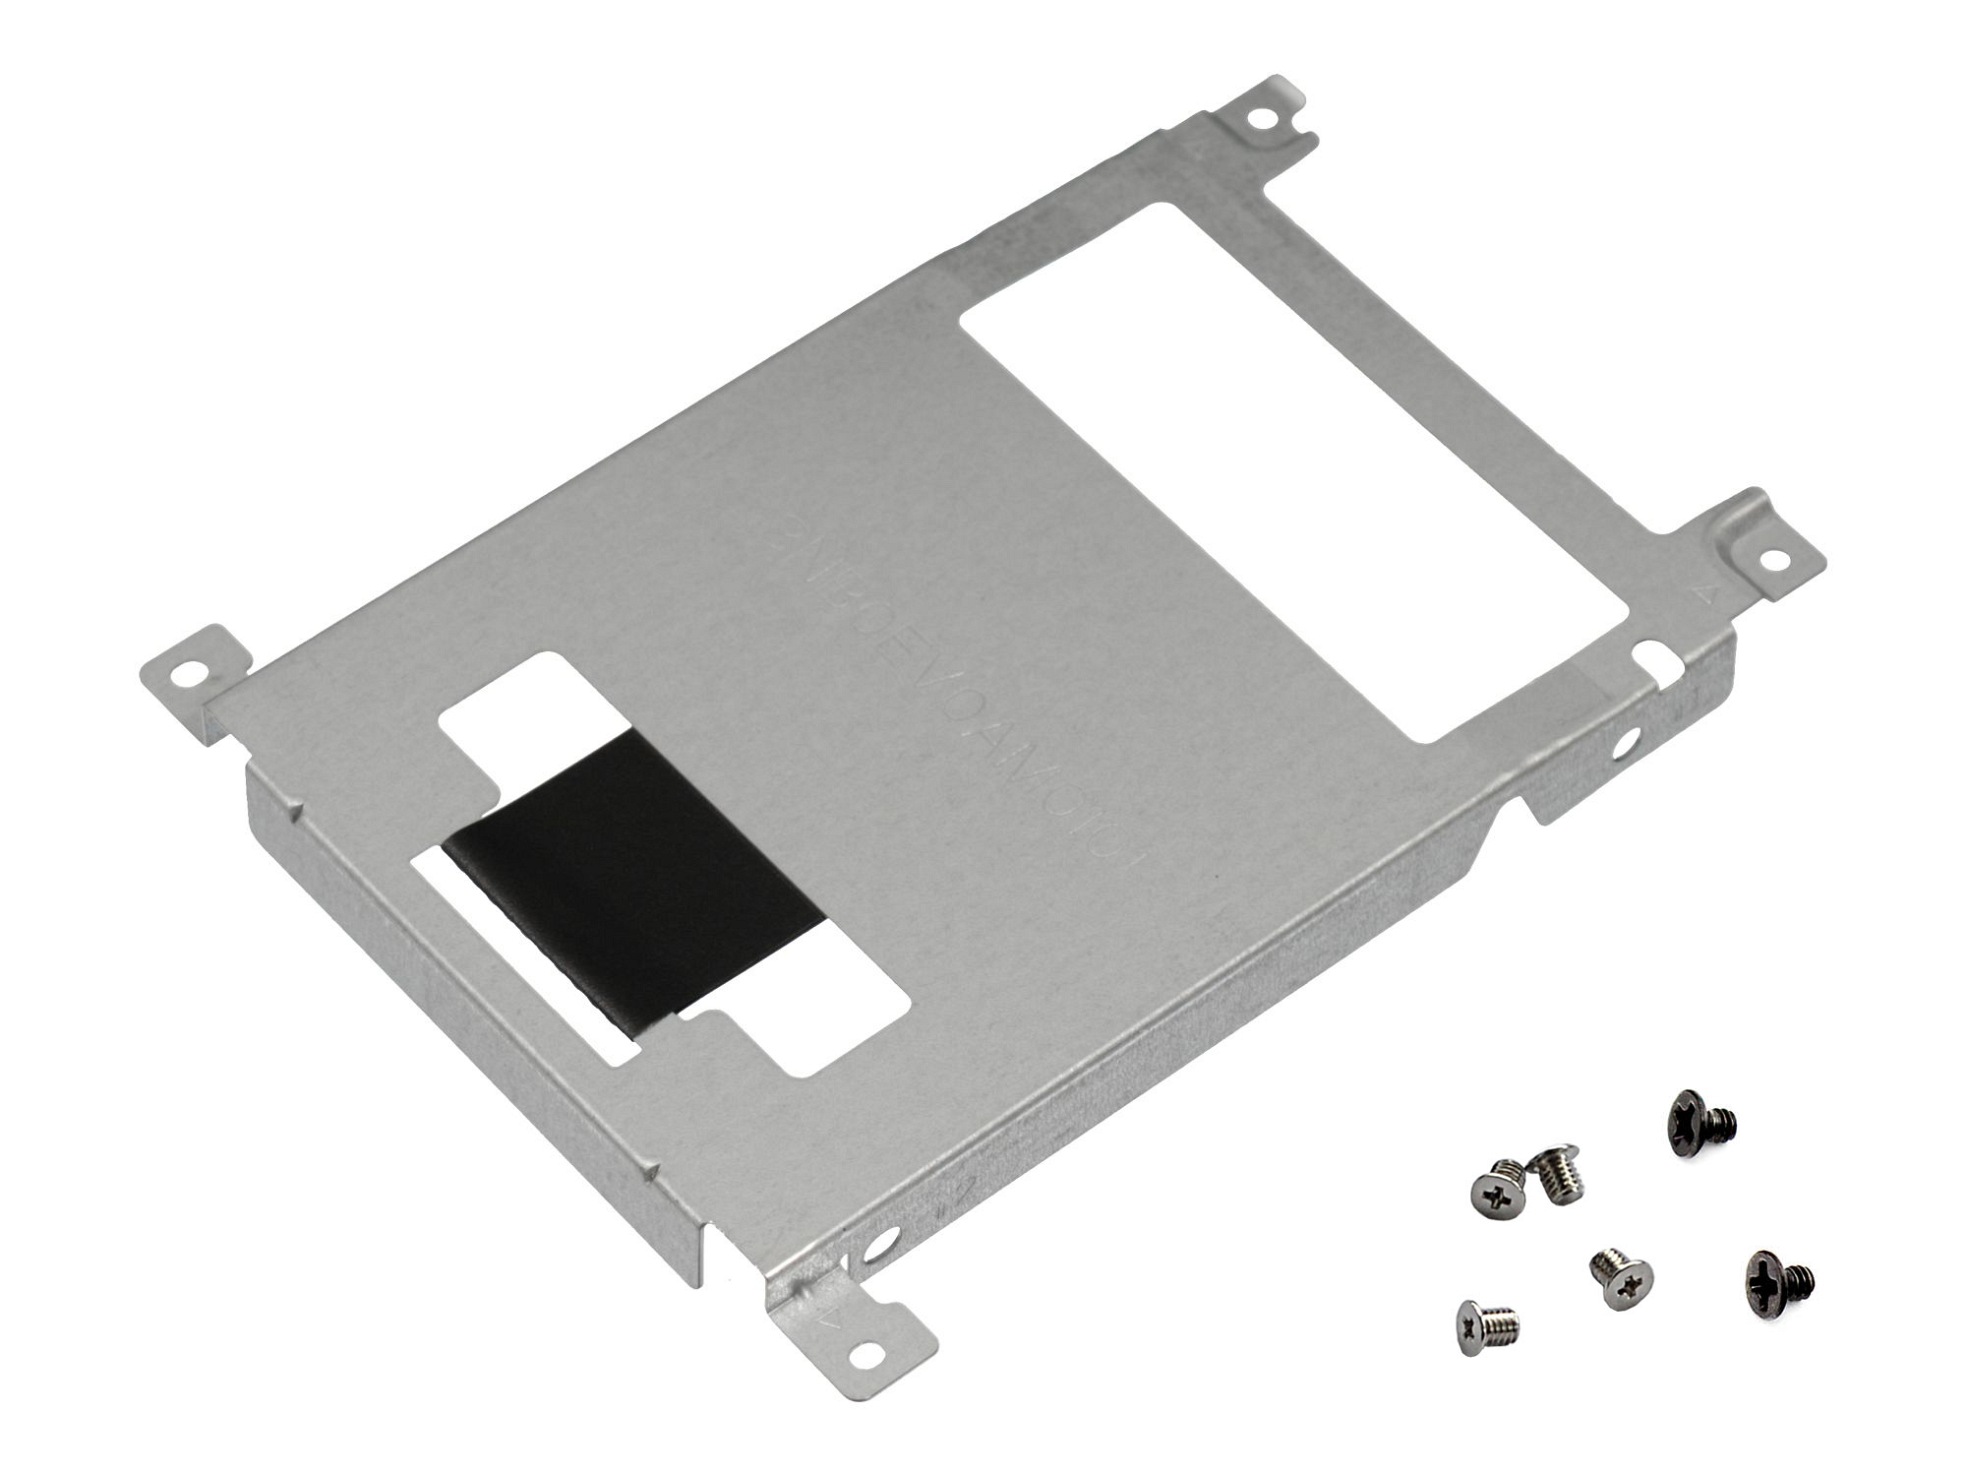 Festplatten-Einbaurahmen für den 1. Festplatten Schacht inkl. Schrauben Original für Asus VivoBook F705UB